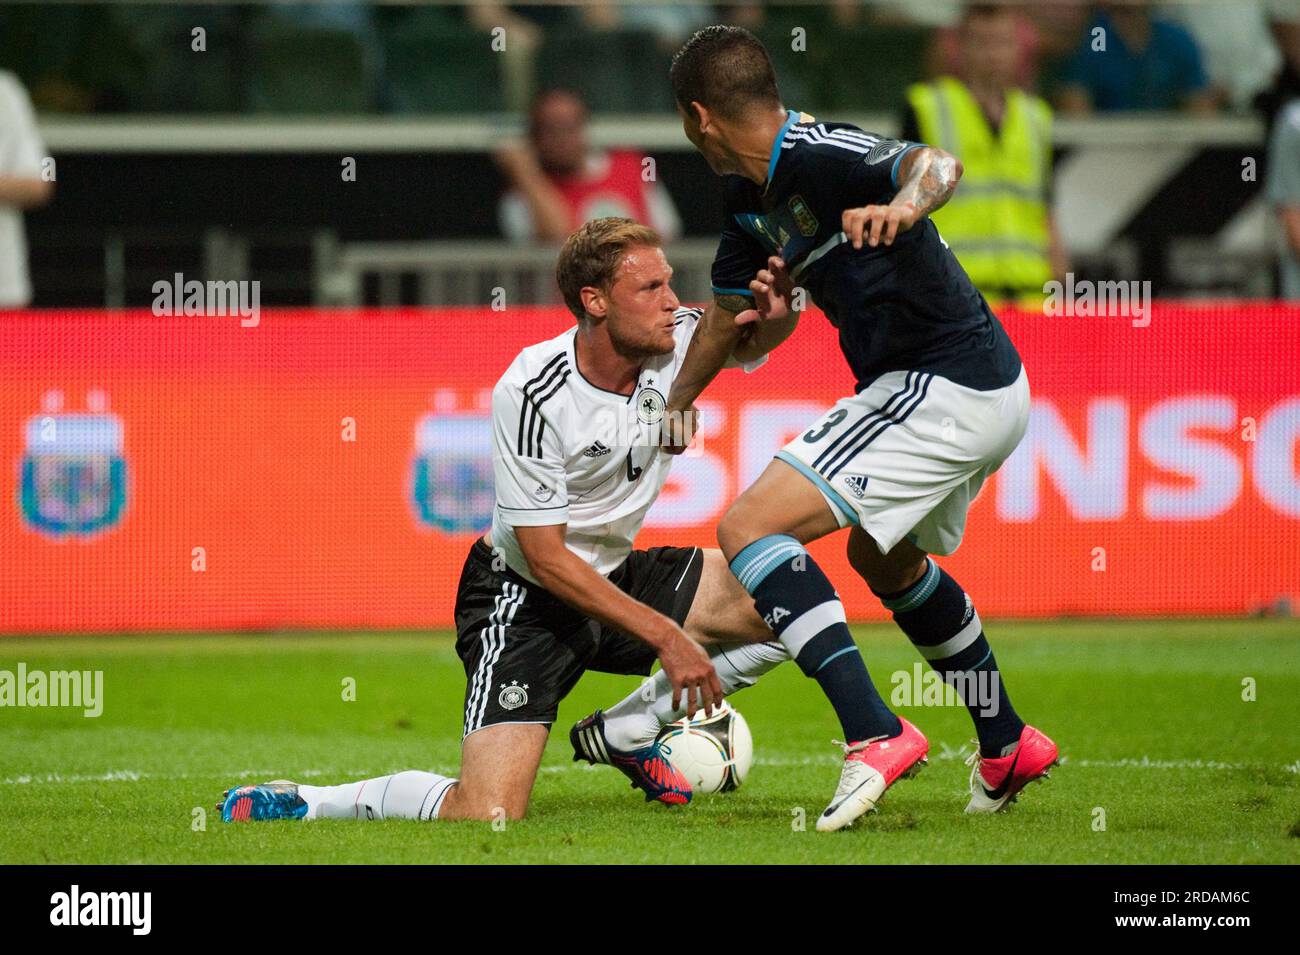 Benedikt Höwedes Aktion gegen Marcos Rojo Fußball Länderspiel Deutschland - Argentin 1:3, 15.8.2012 Banque D'Images